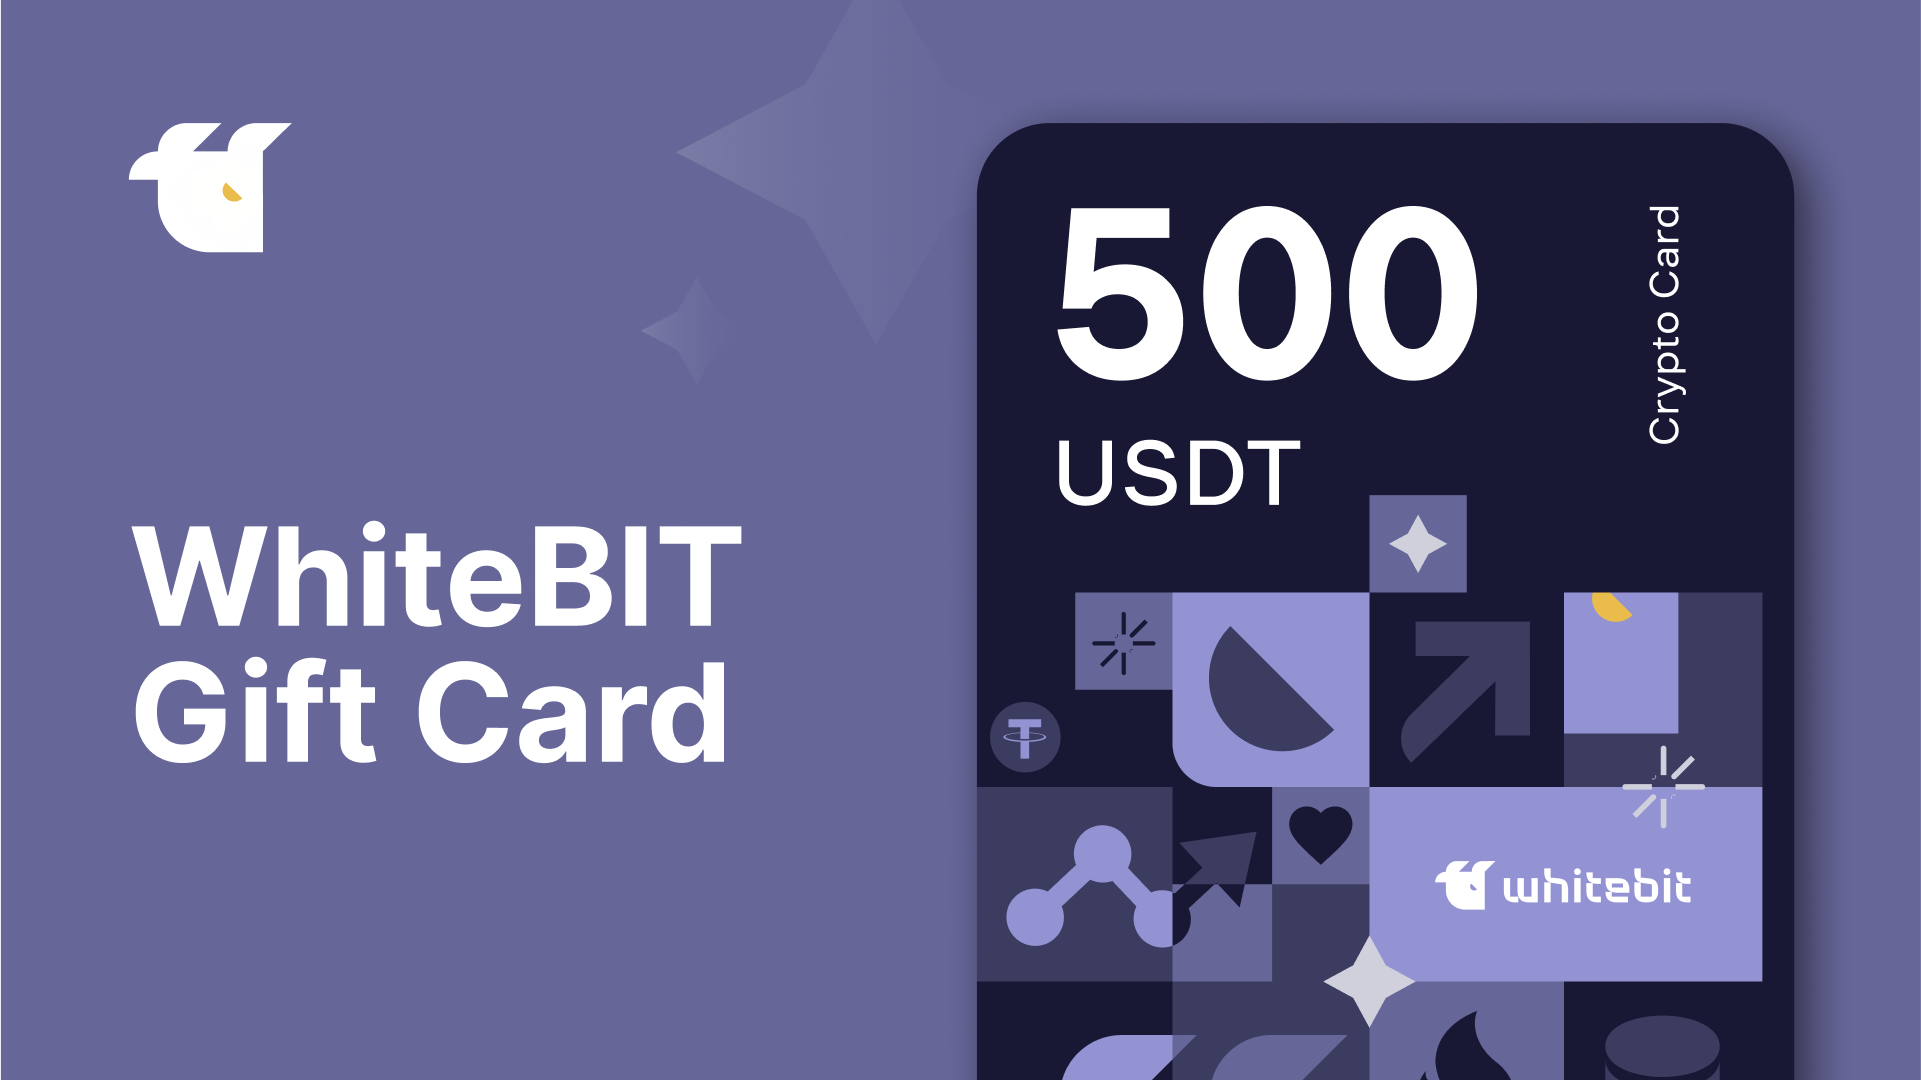 WhiteBIT 500 USDT Gift Card